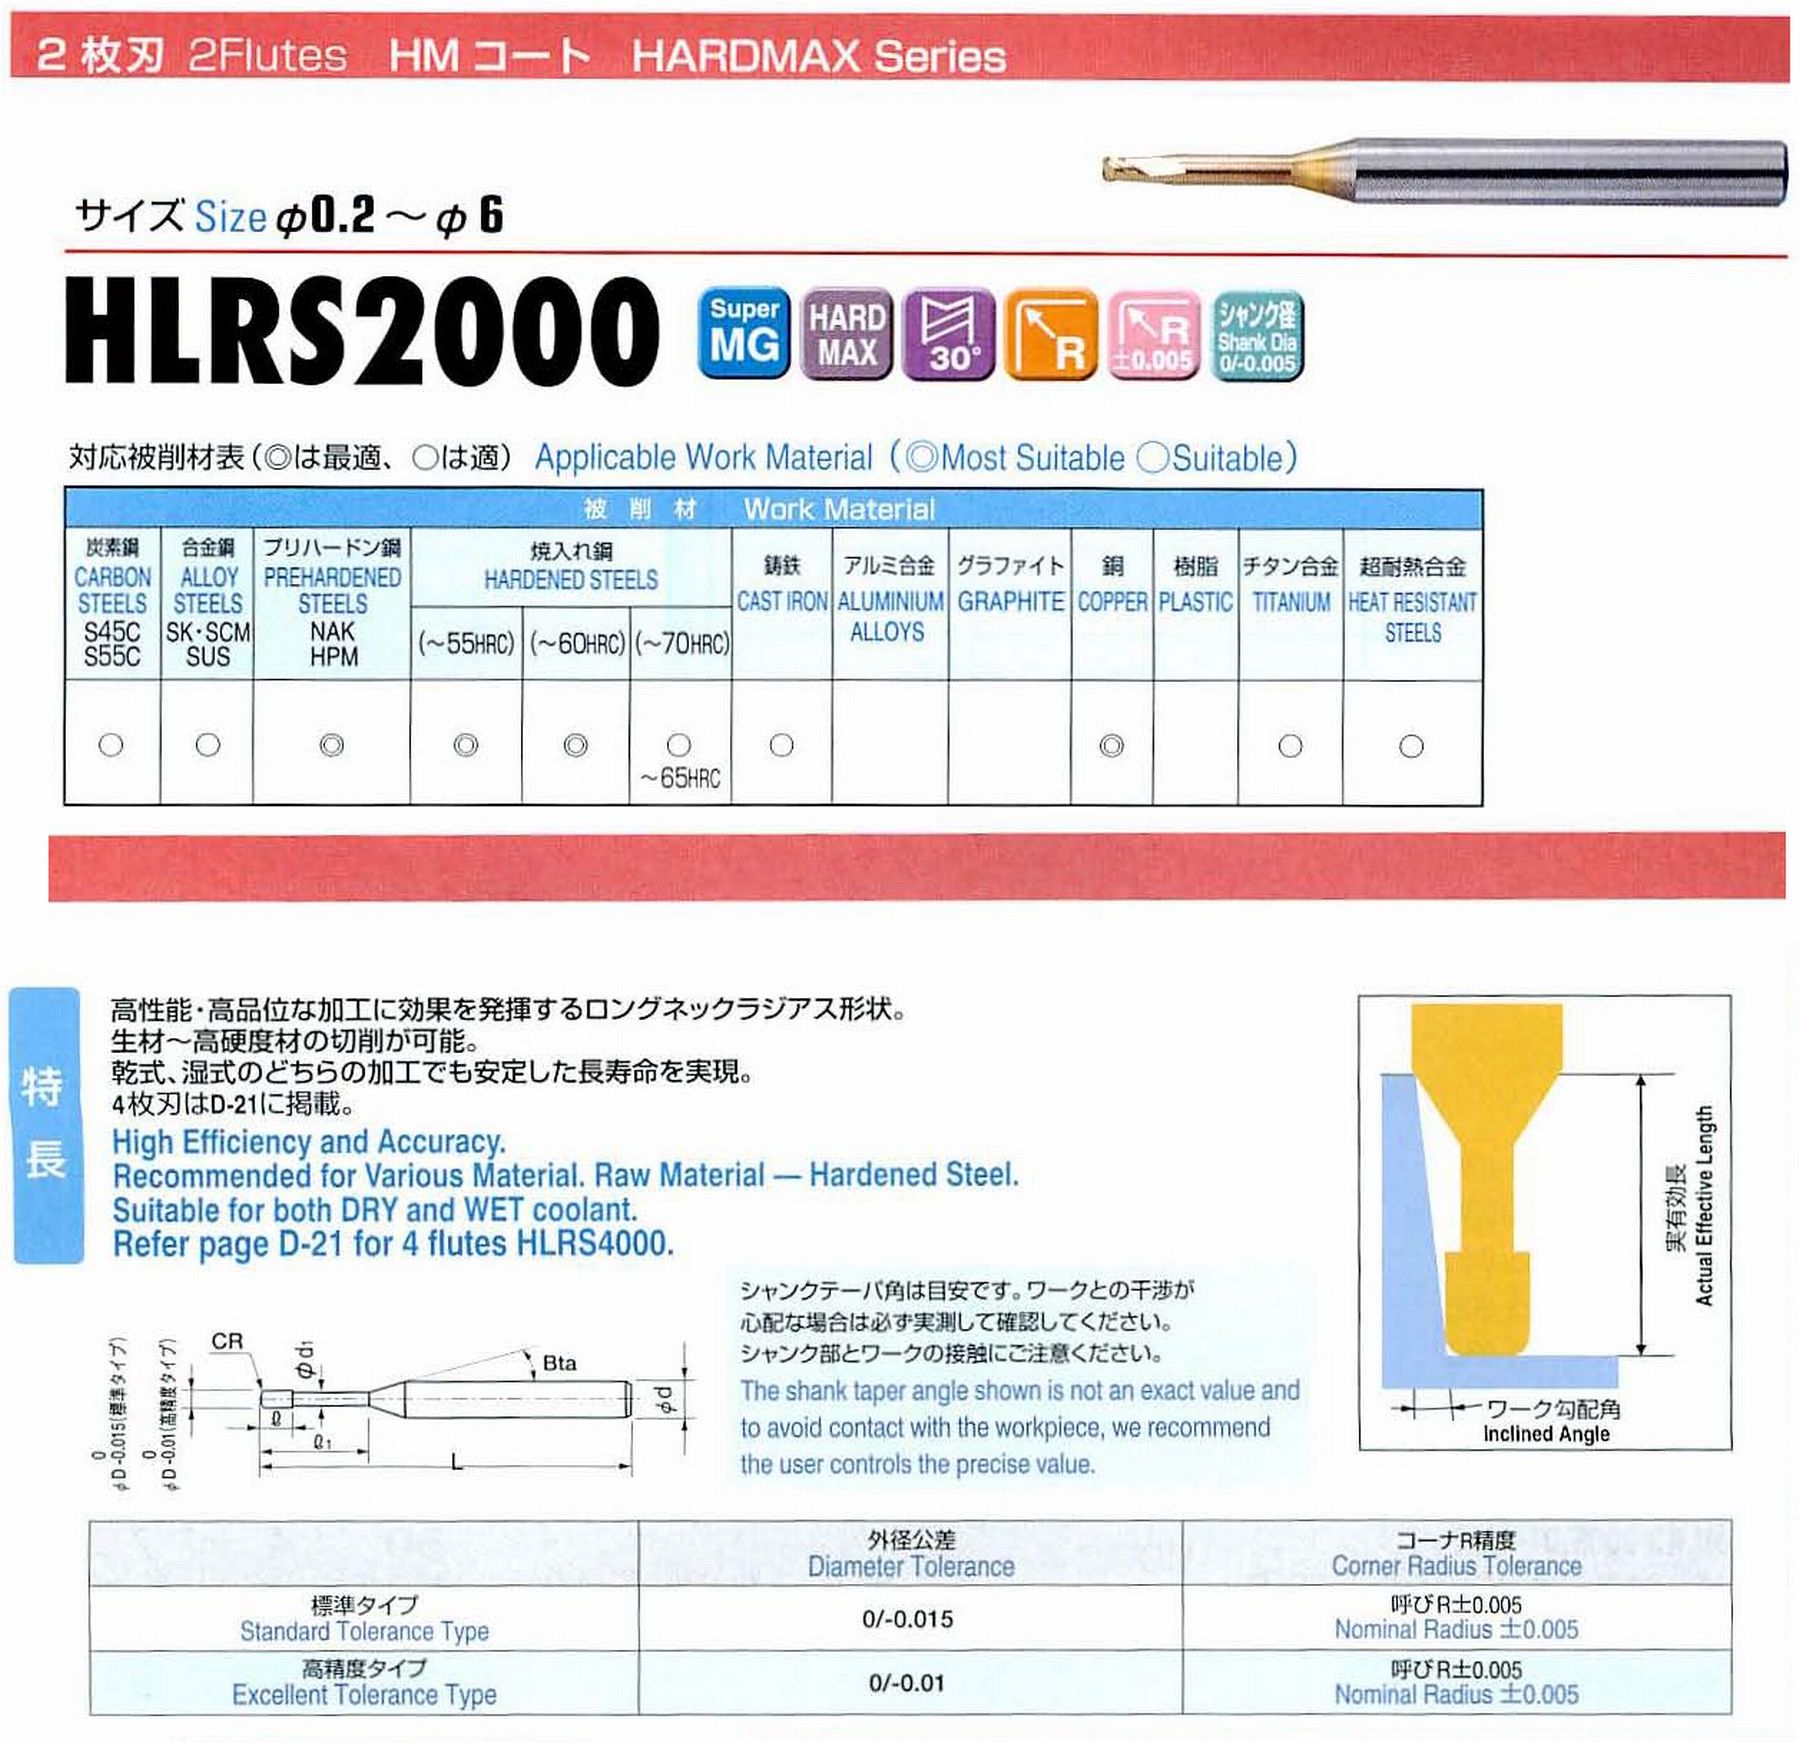 ユニオンツール 2枚刃 HLRS2006-005-020 外径0.6 コーナ半径R0.05 有効長2 刃長0.6 首径0.58 シャンクテーパ角16° 全長50 シャンク径4